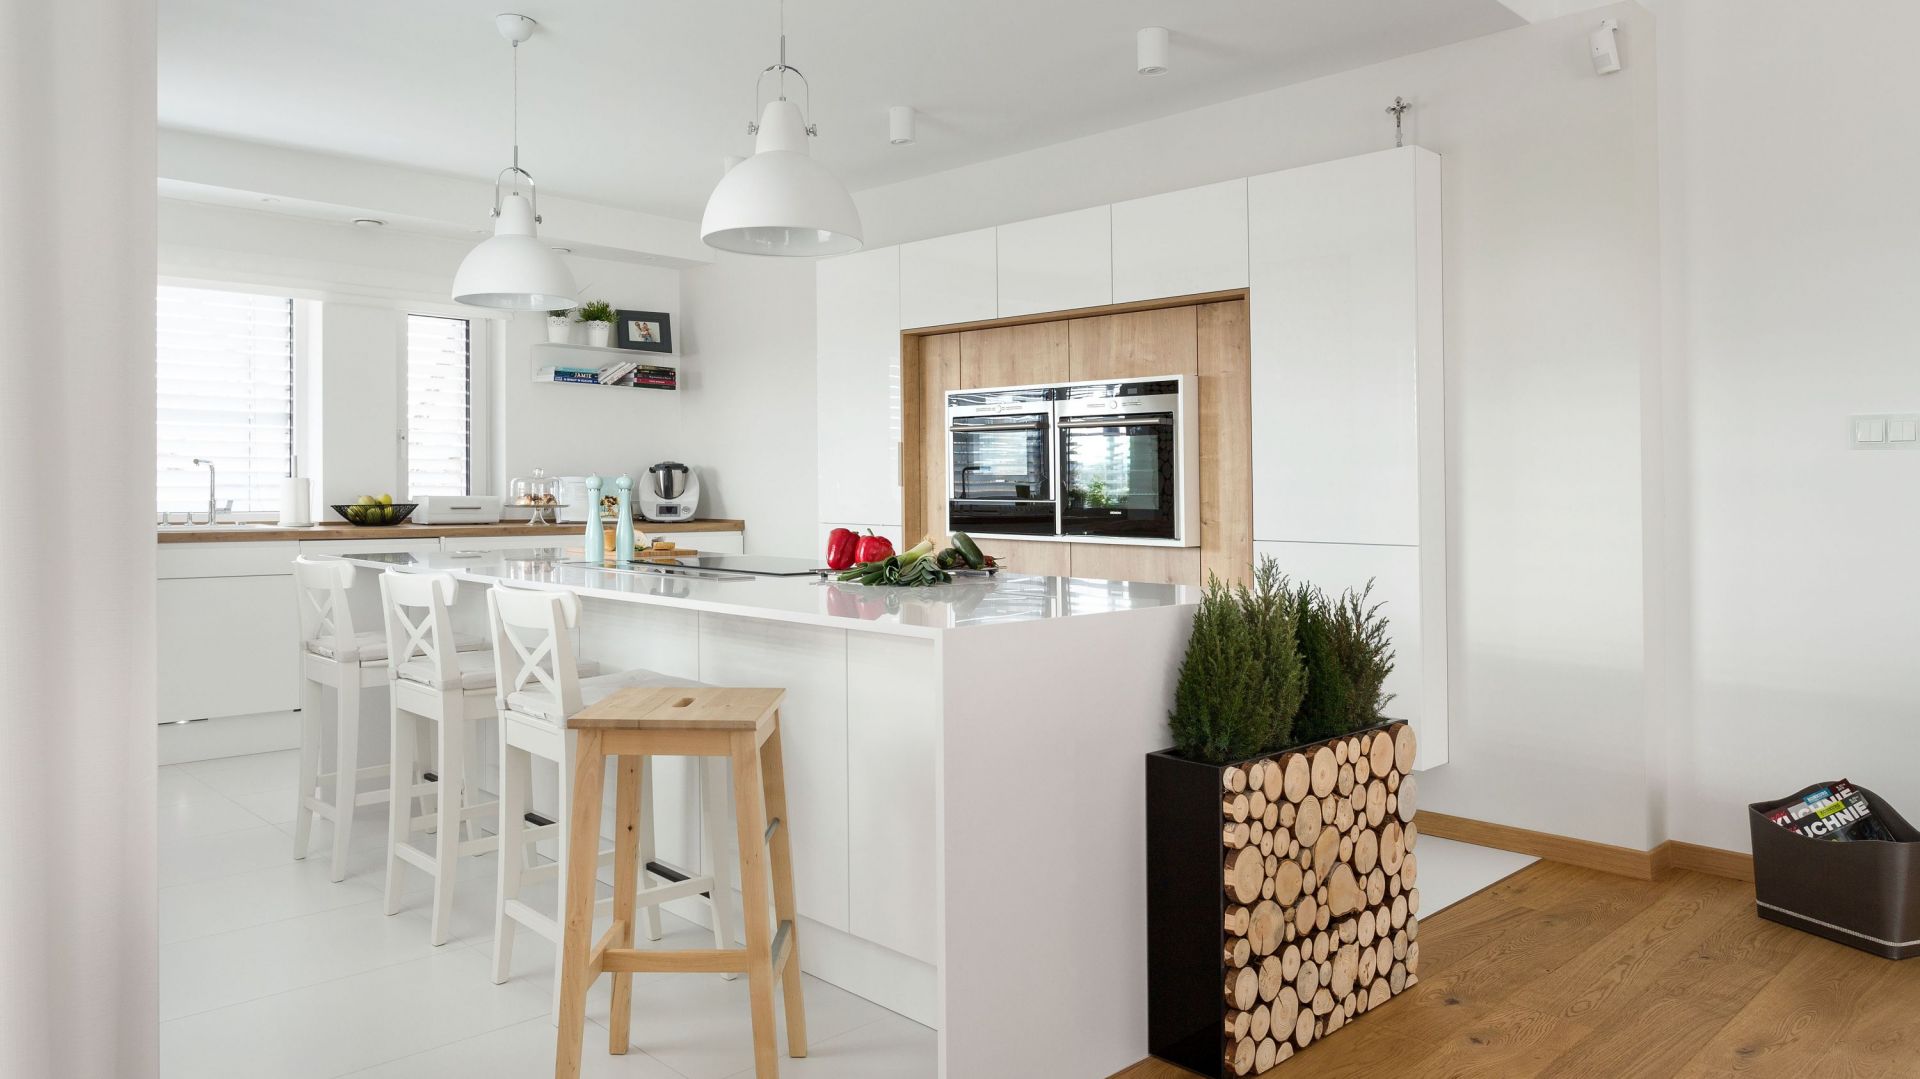 Biała kuchnia ocieplona drewnem: gotowy projekt wnętrza